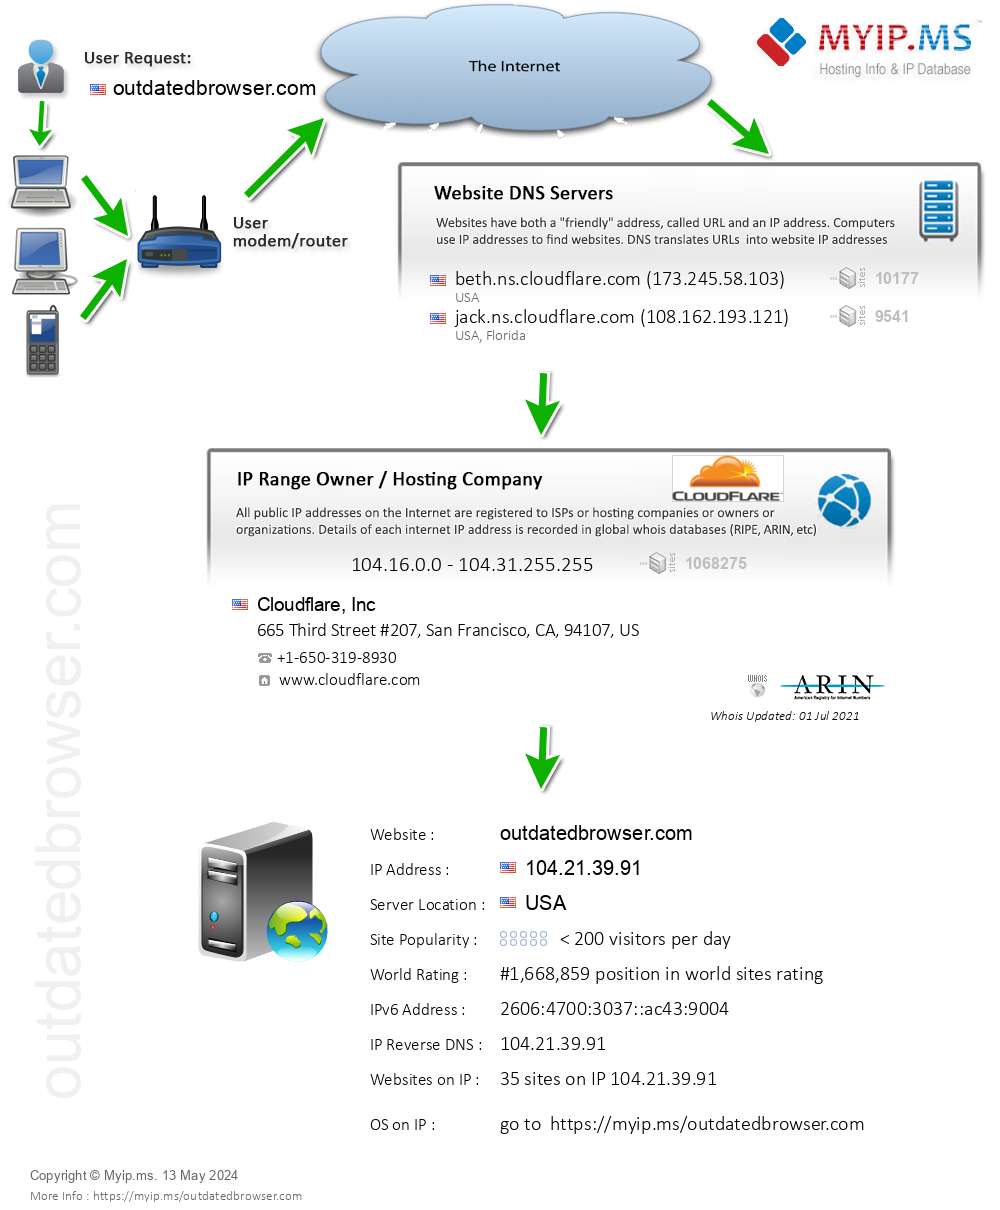 Outdatedbrowser.com - Website Hosting Visual IP Diagram